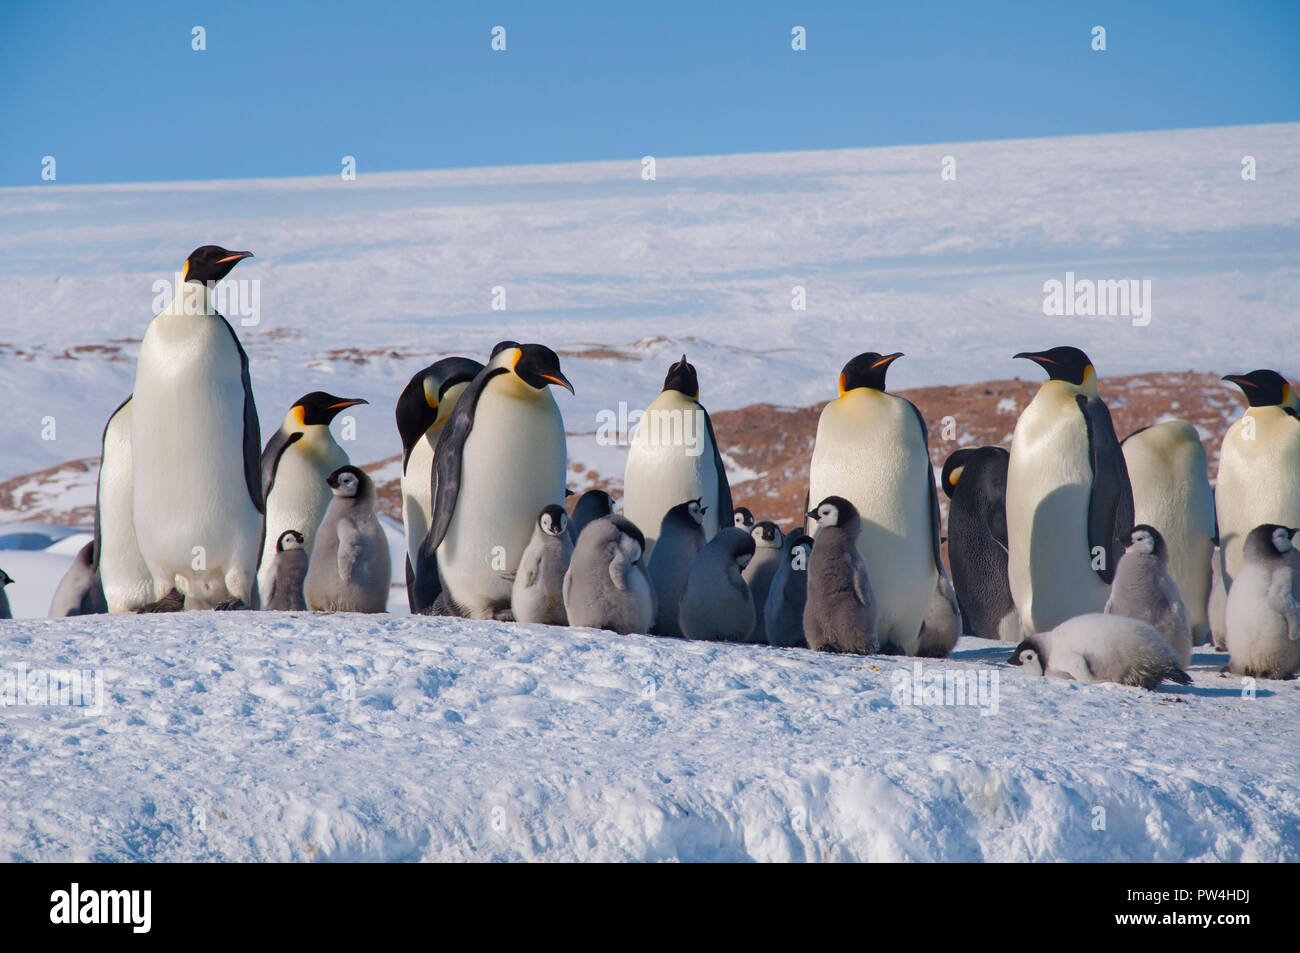 Colonie, flock - Empereur des pingouins dans l'Antarctique. Les manchots adultes se tiennent sur une journée ensoleillée avec leurs petits dans la neige. L'antarctique. Banque D'Images